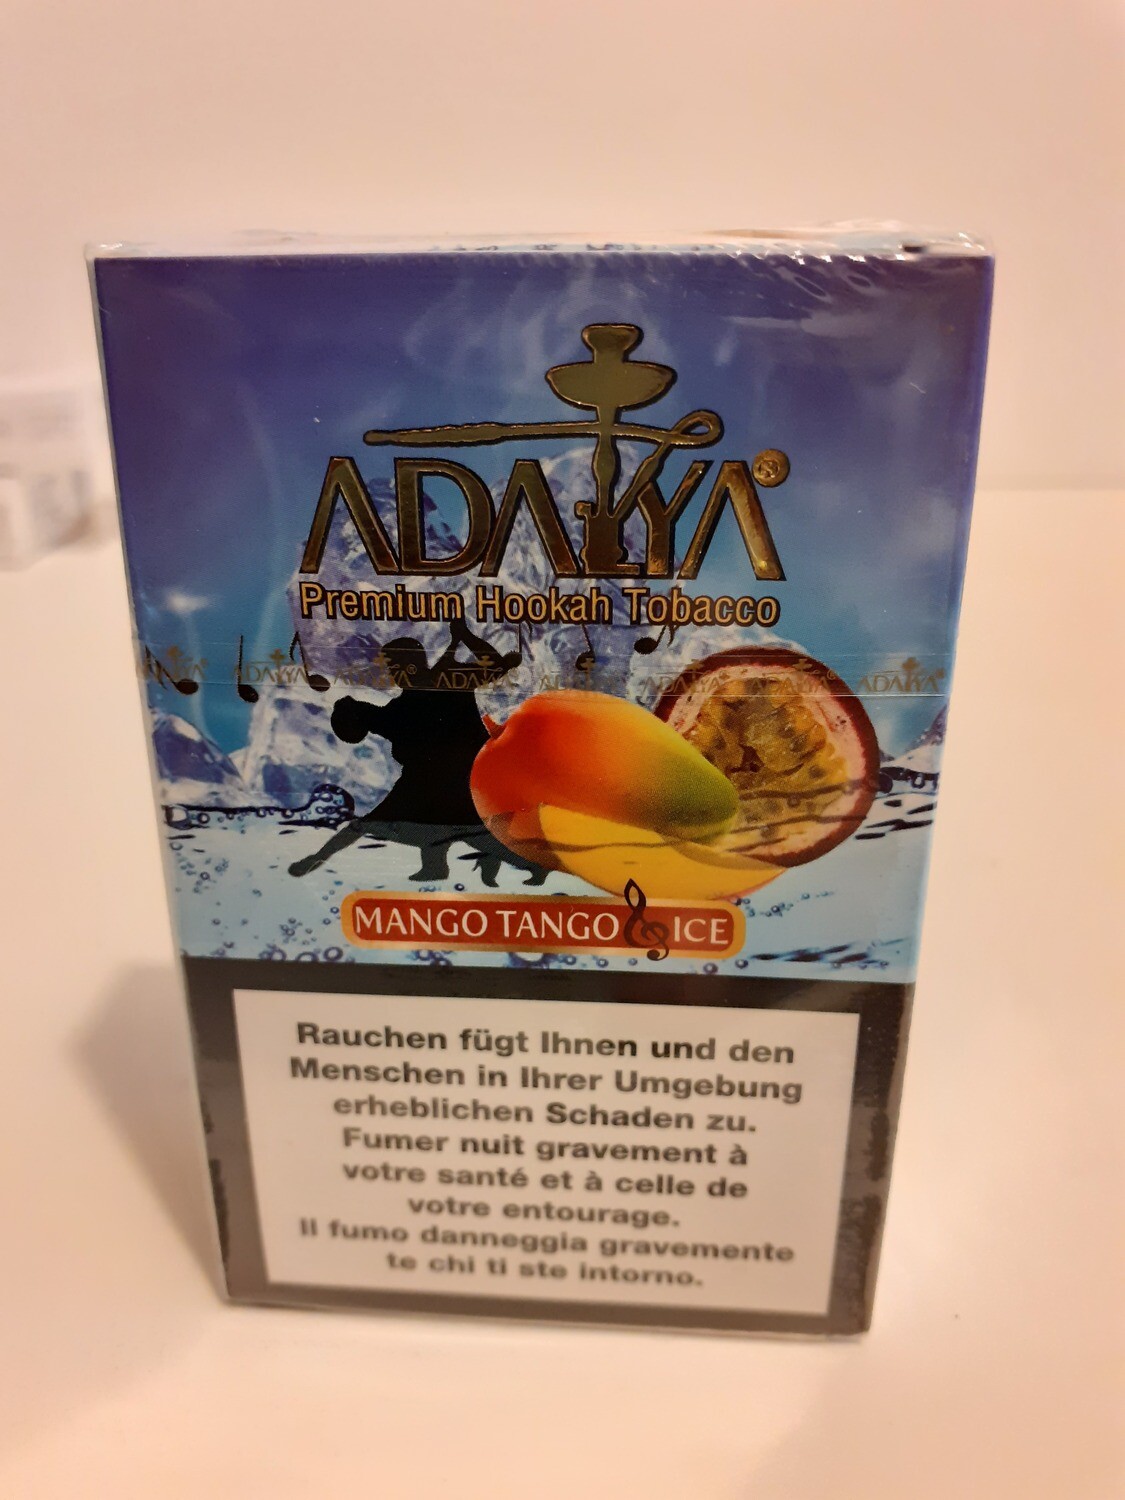 Premium Hookah Tobacco ADAKA